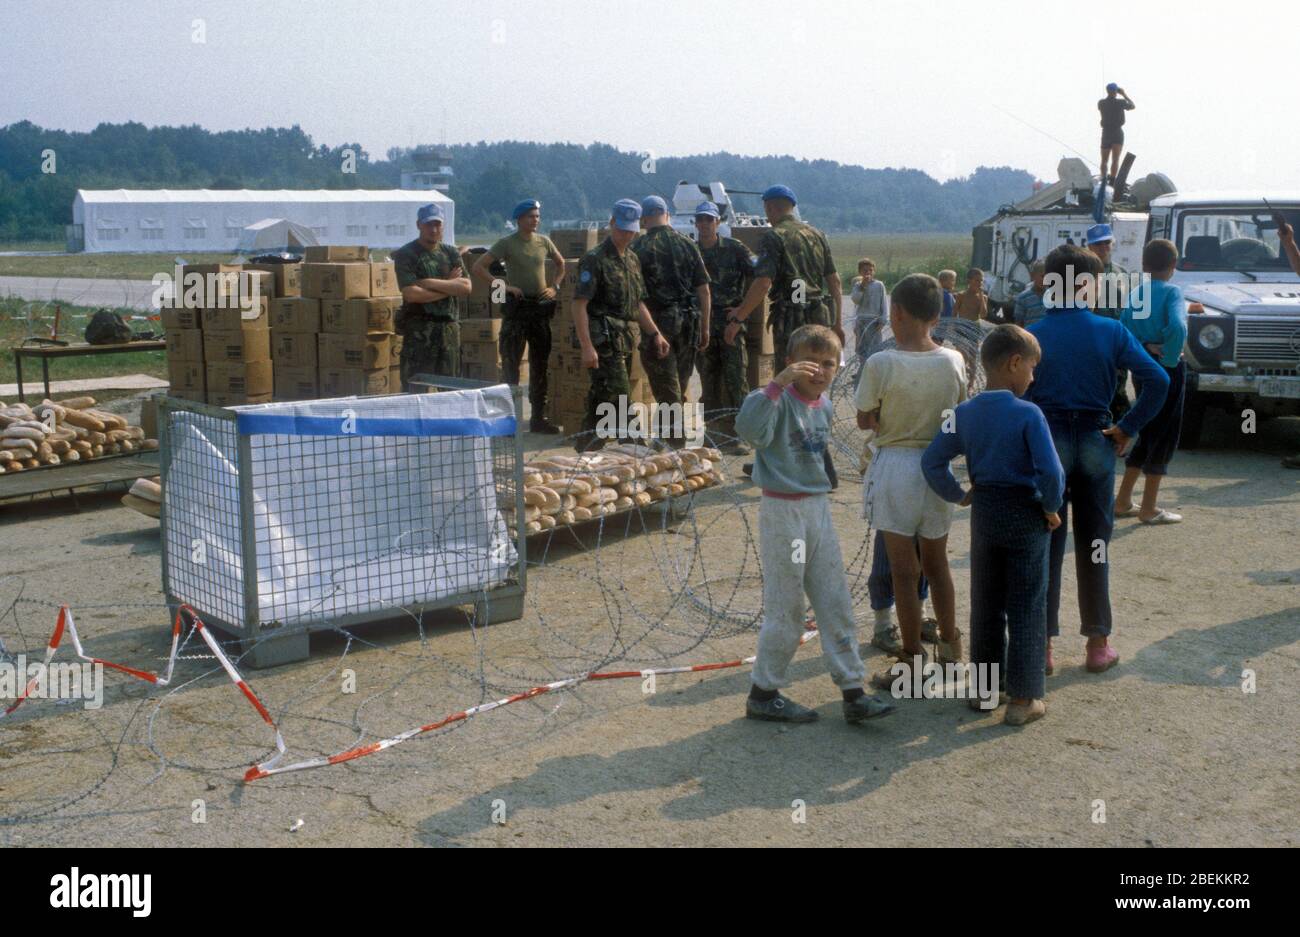 1995 Tuzla, Bosnien - Flugplatz Tuzla temporäres UN-Flüchtlingslager für bosnische Muslime, die vor dem Massaker von Srebrenica während des Bosnienkrieges fliehen, in dem Bild, dass von UN-Soldaten Brot geliefert wird Stockfoto